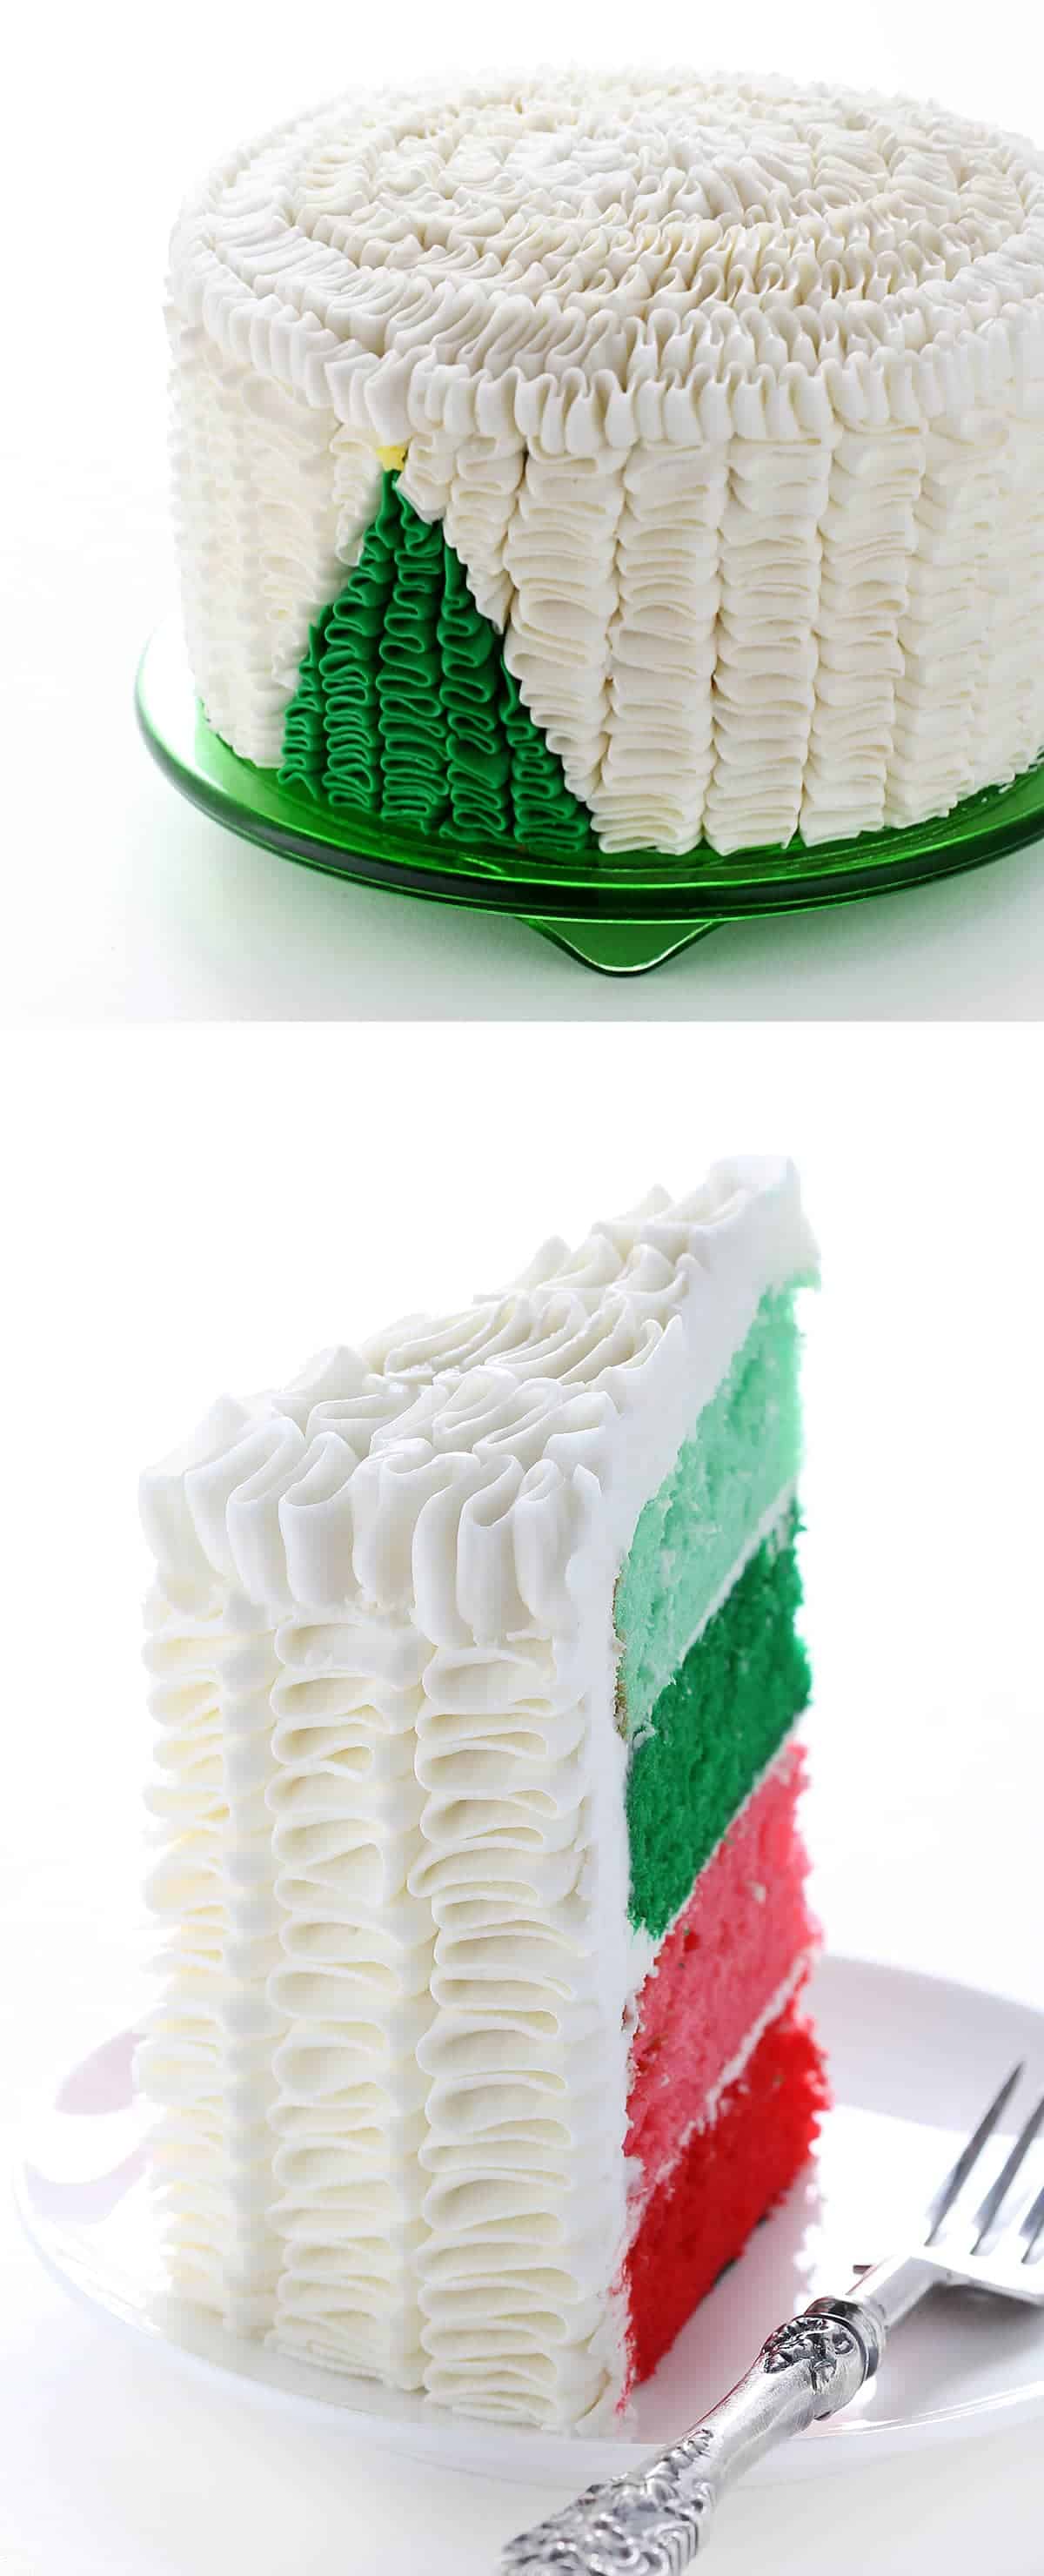 想在传统的皱褶蛋糕上添加一些特别的东西吗?这有一个完整的视频教程!